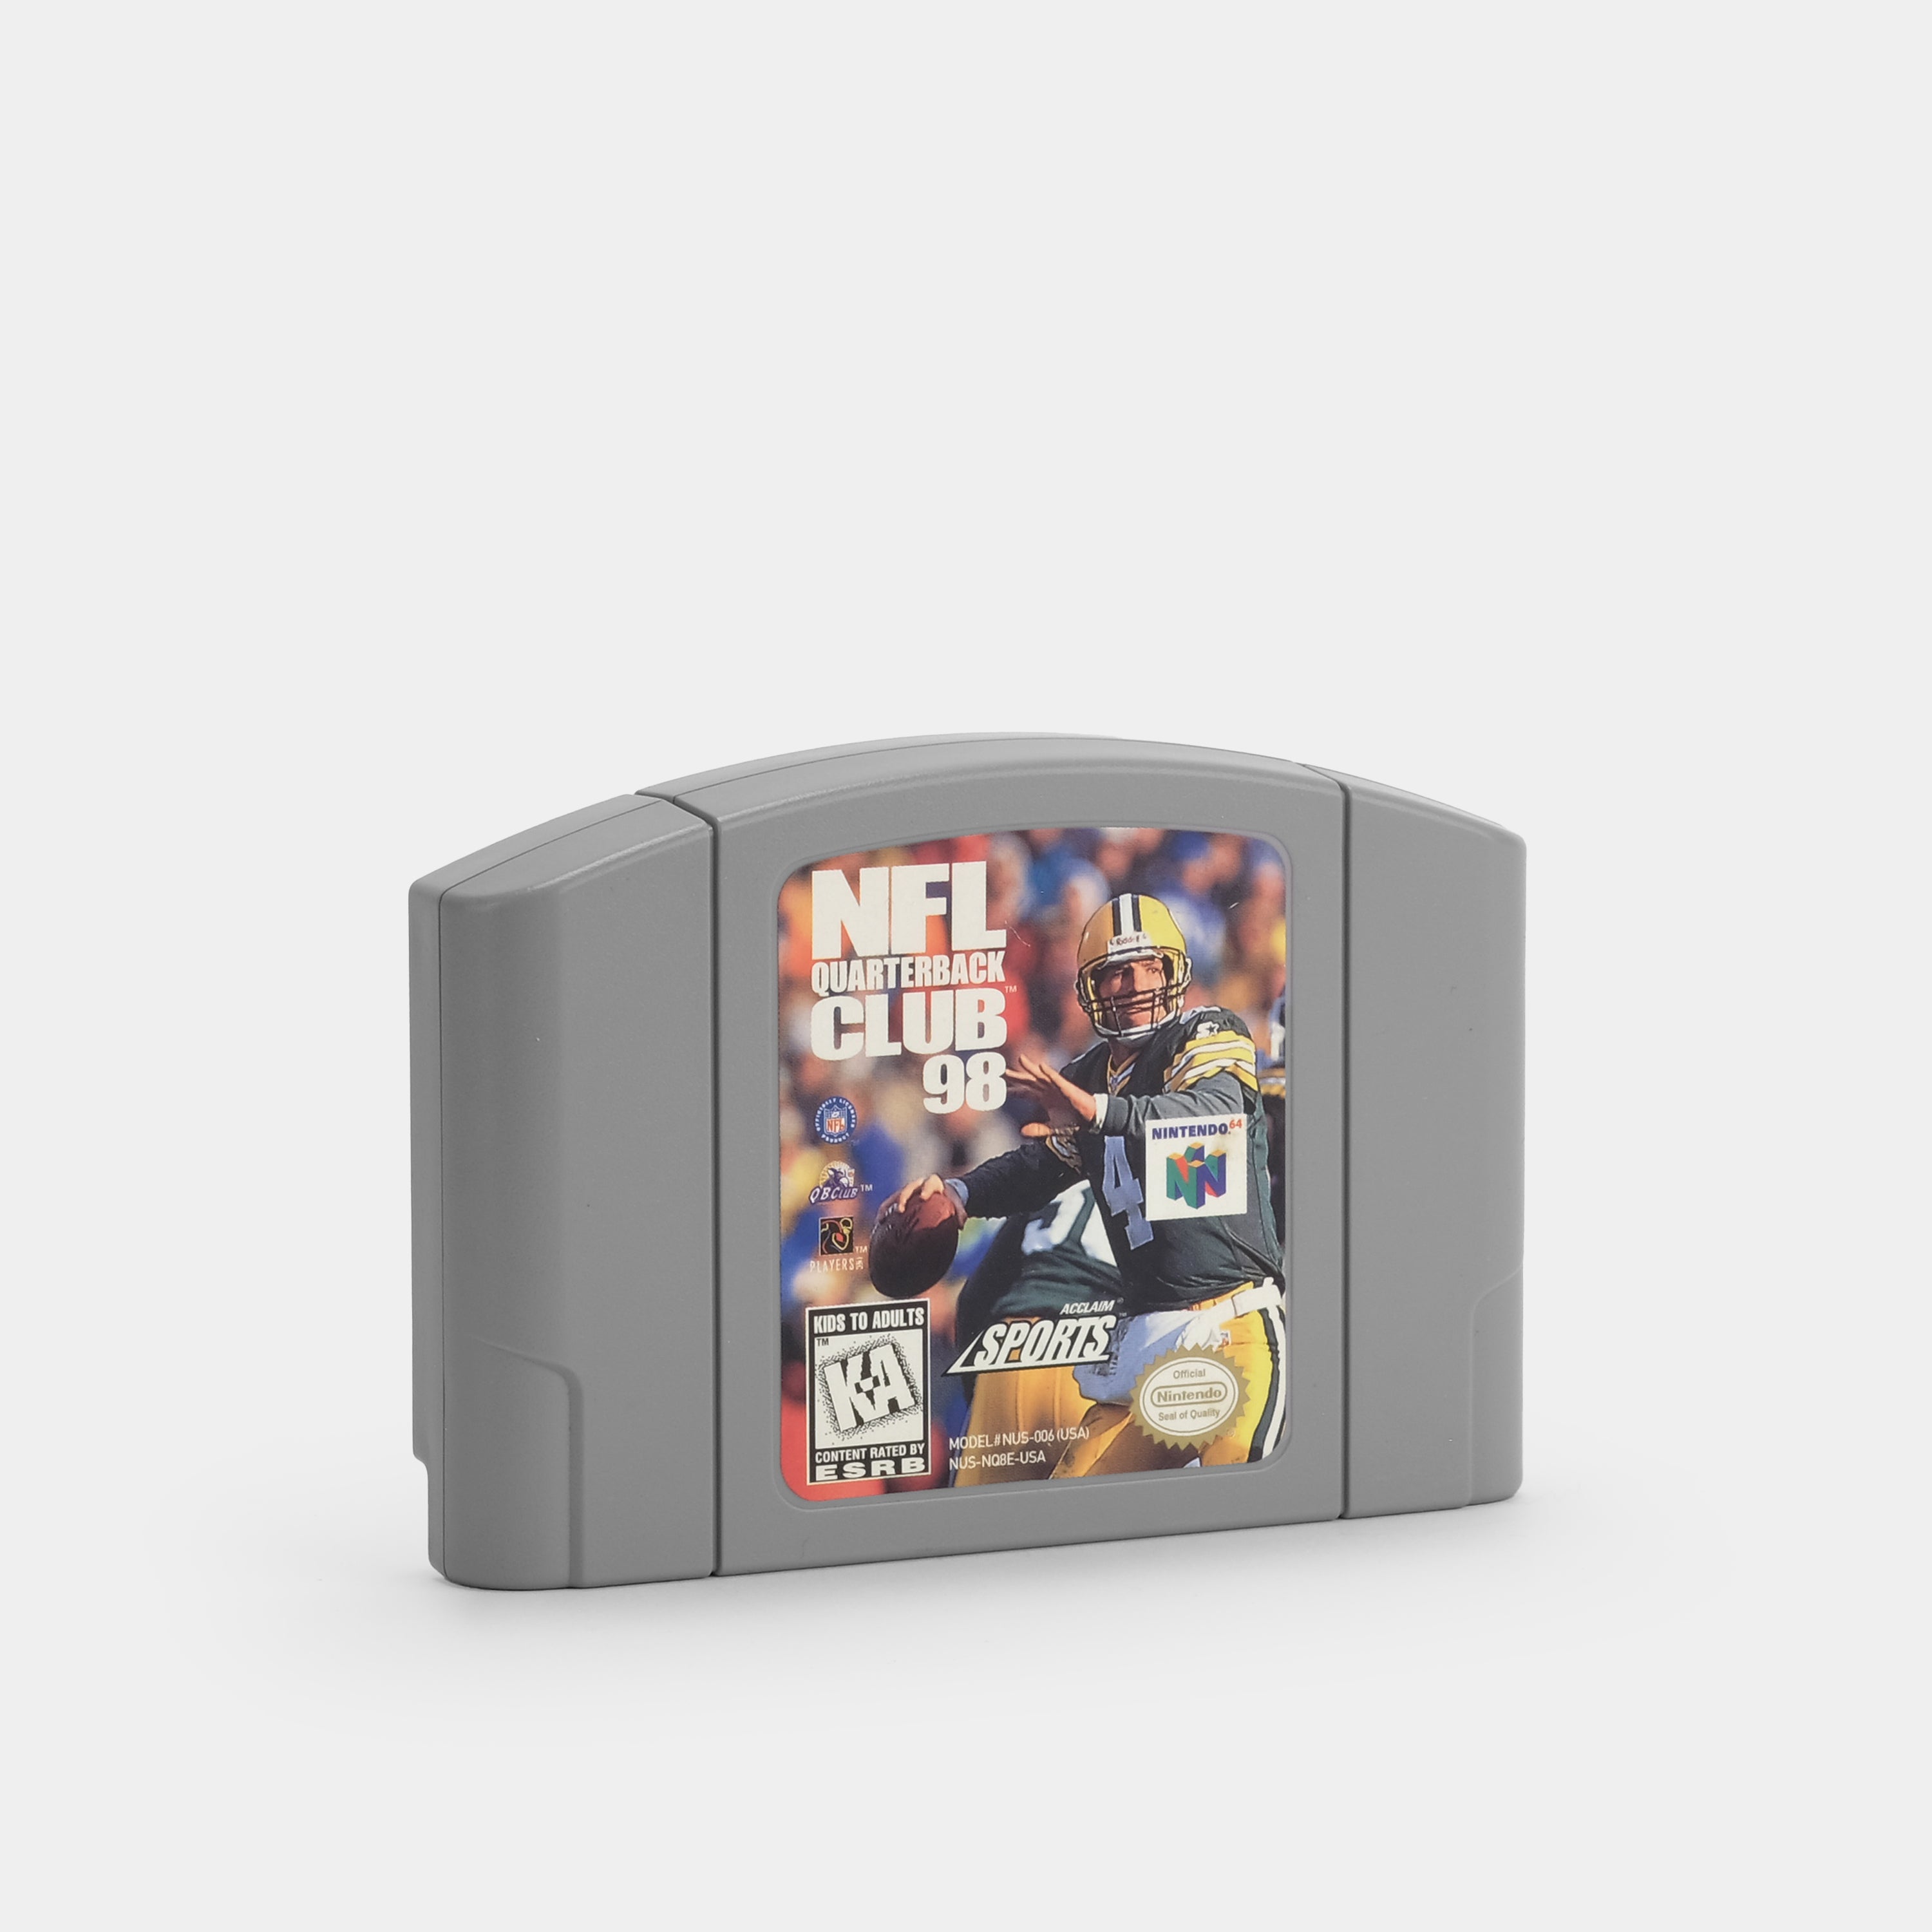 NFL Quarterback Club 98 Nintendo 64 Game